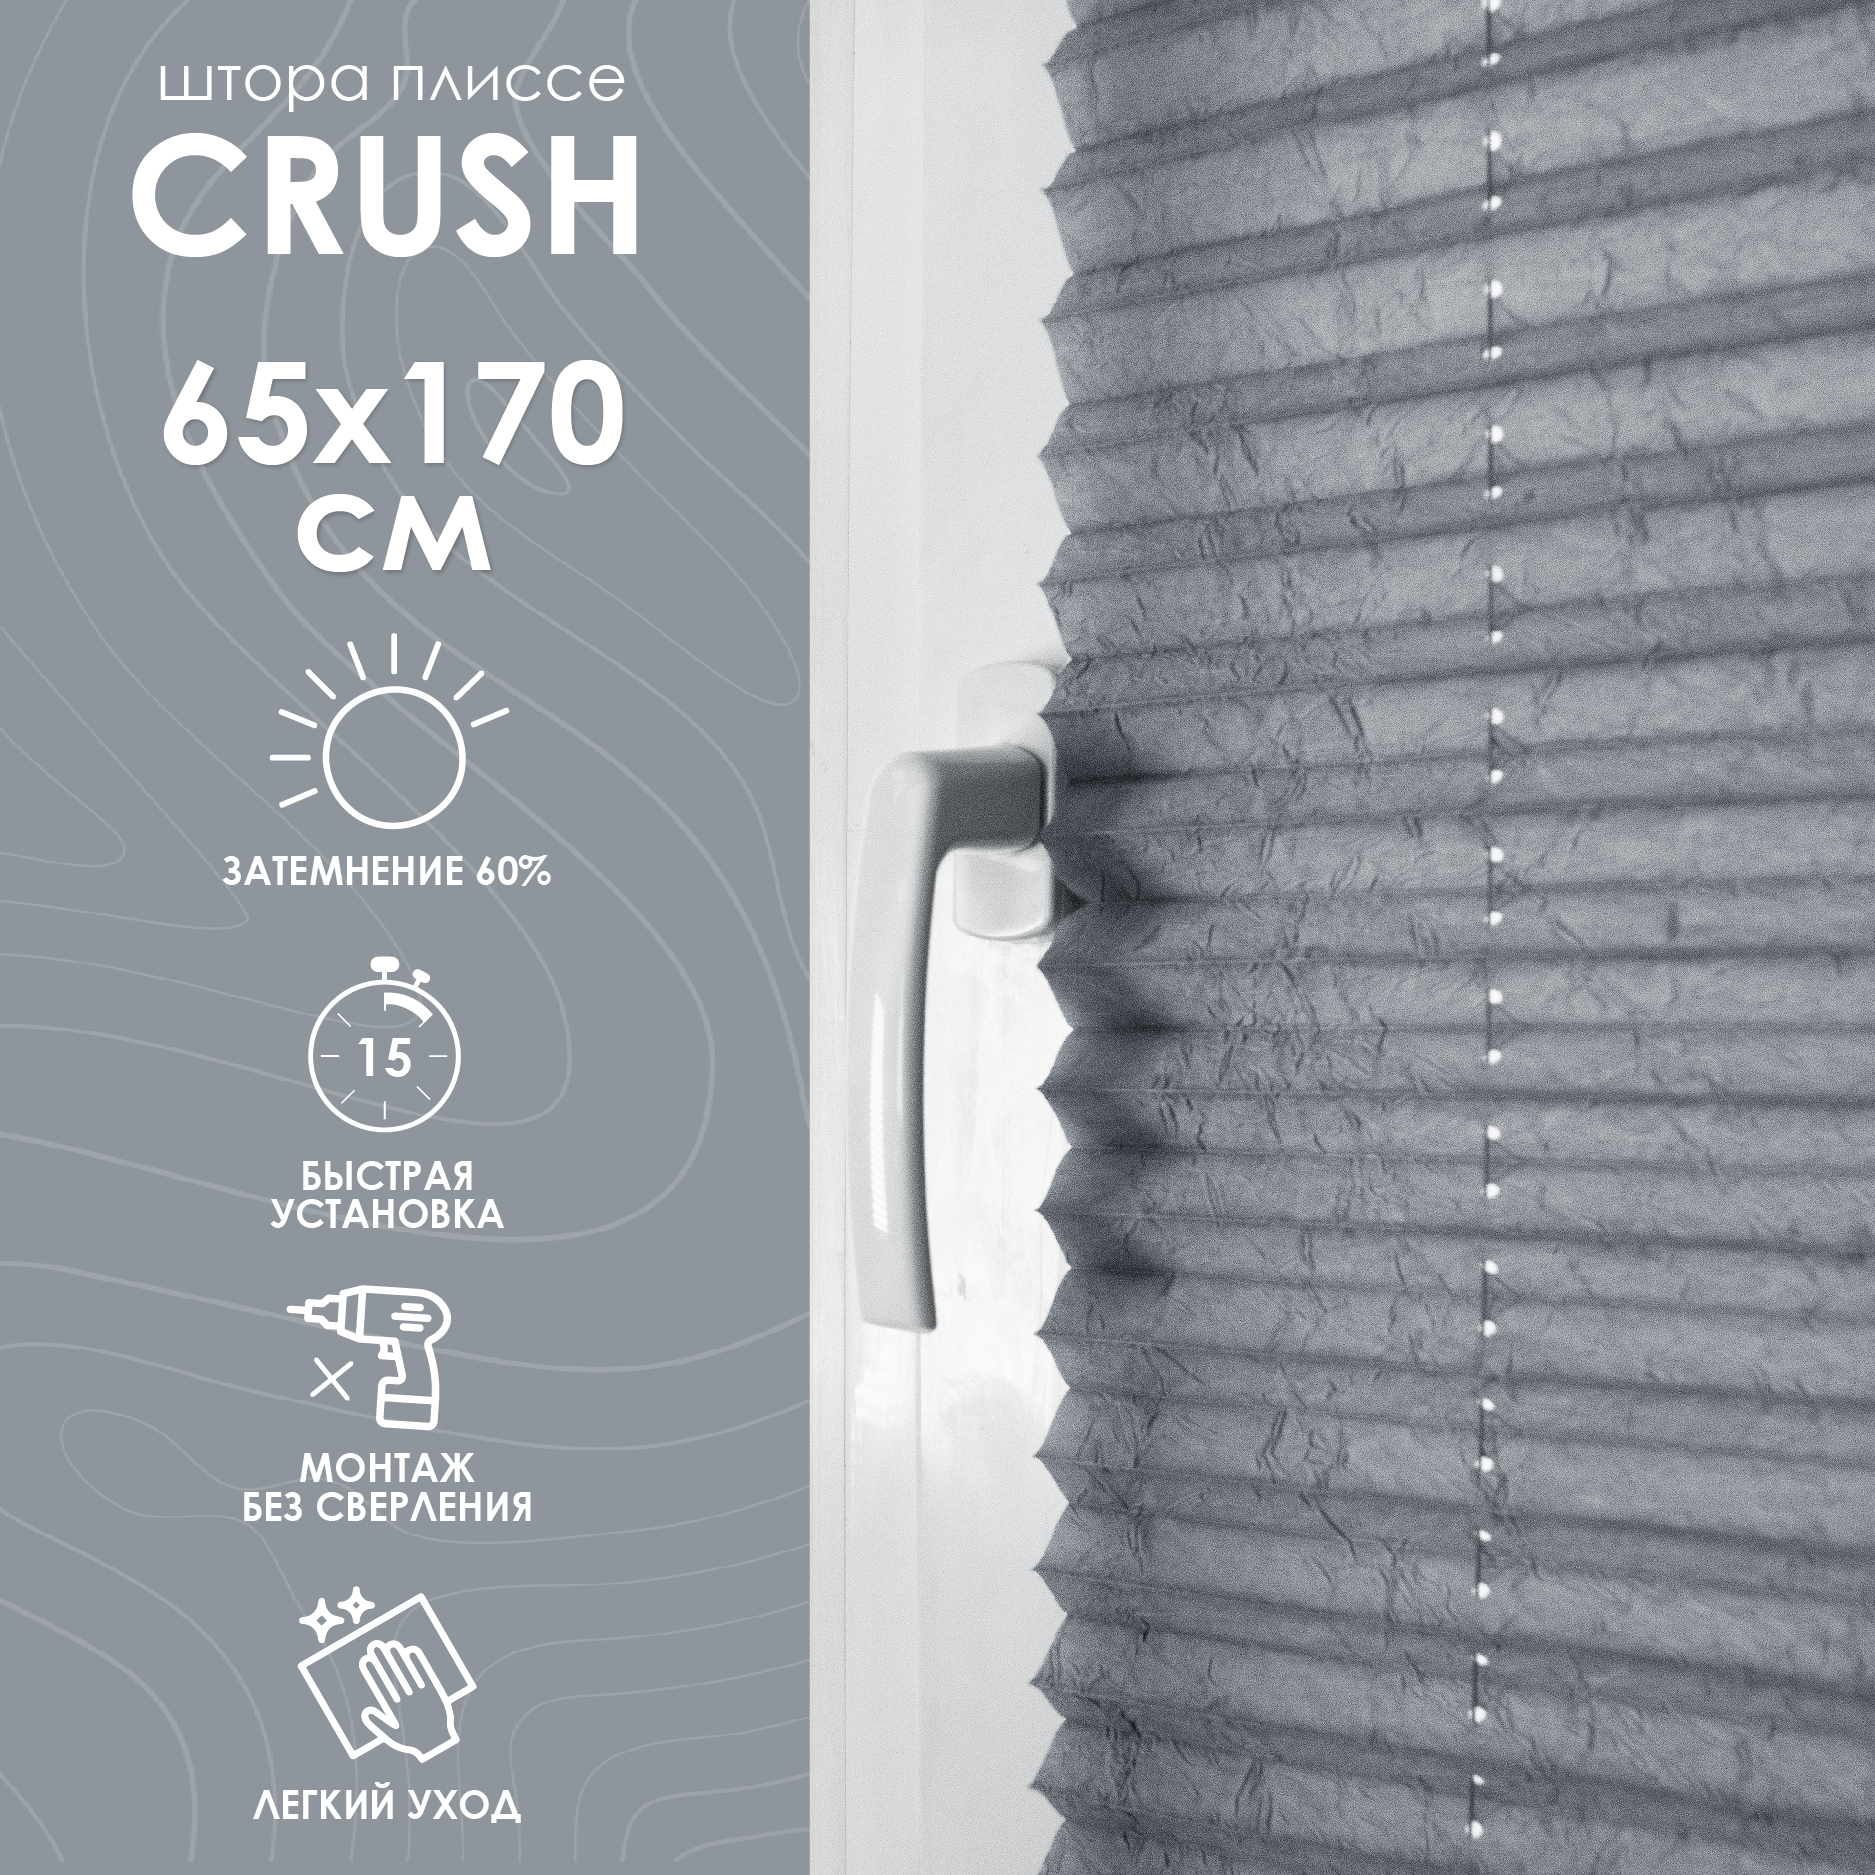 Плиссе натяжного типа Crush, серый, 65х170 см купить в интернет-магазине, цены на Мегамаркет